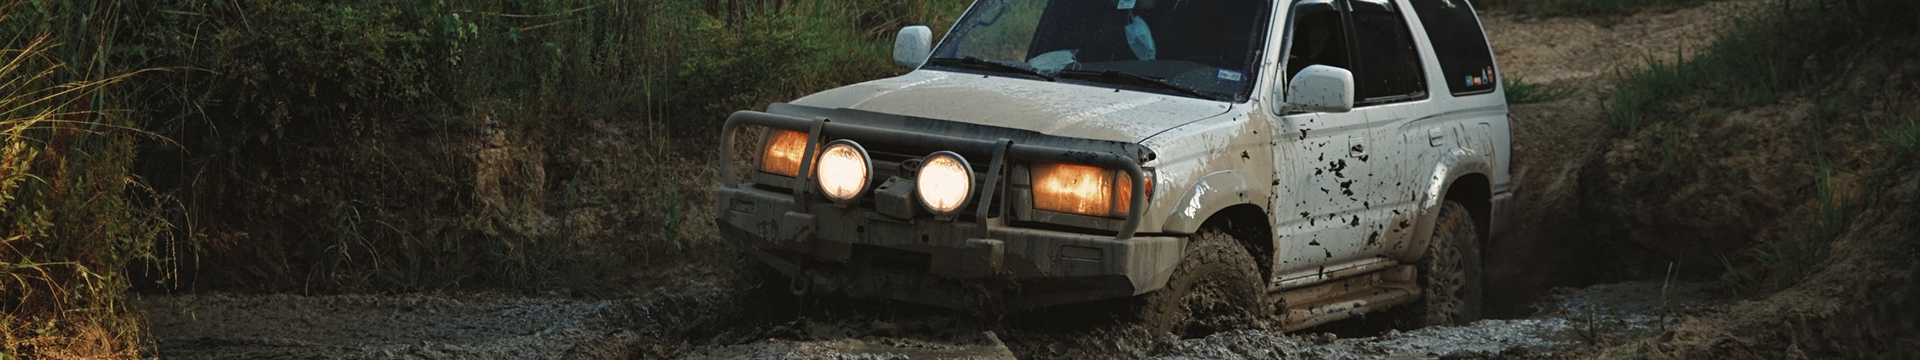 Toyota 4Runner in Mud